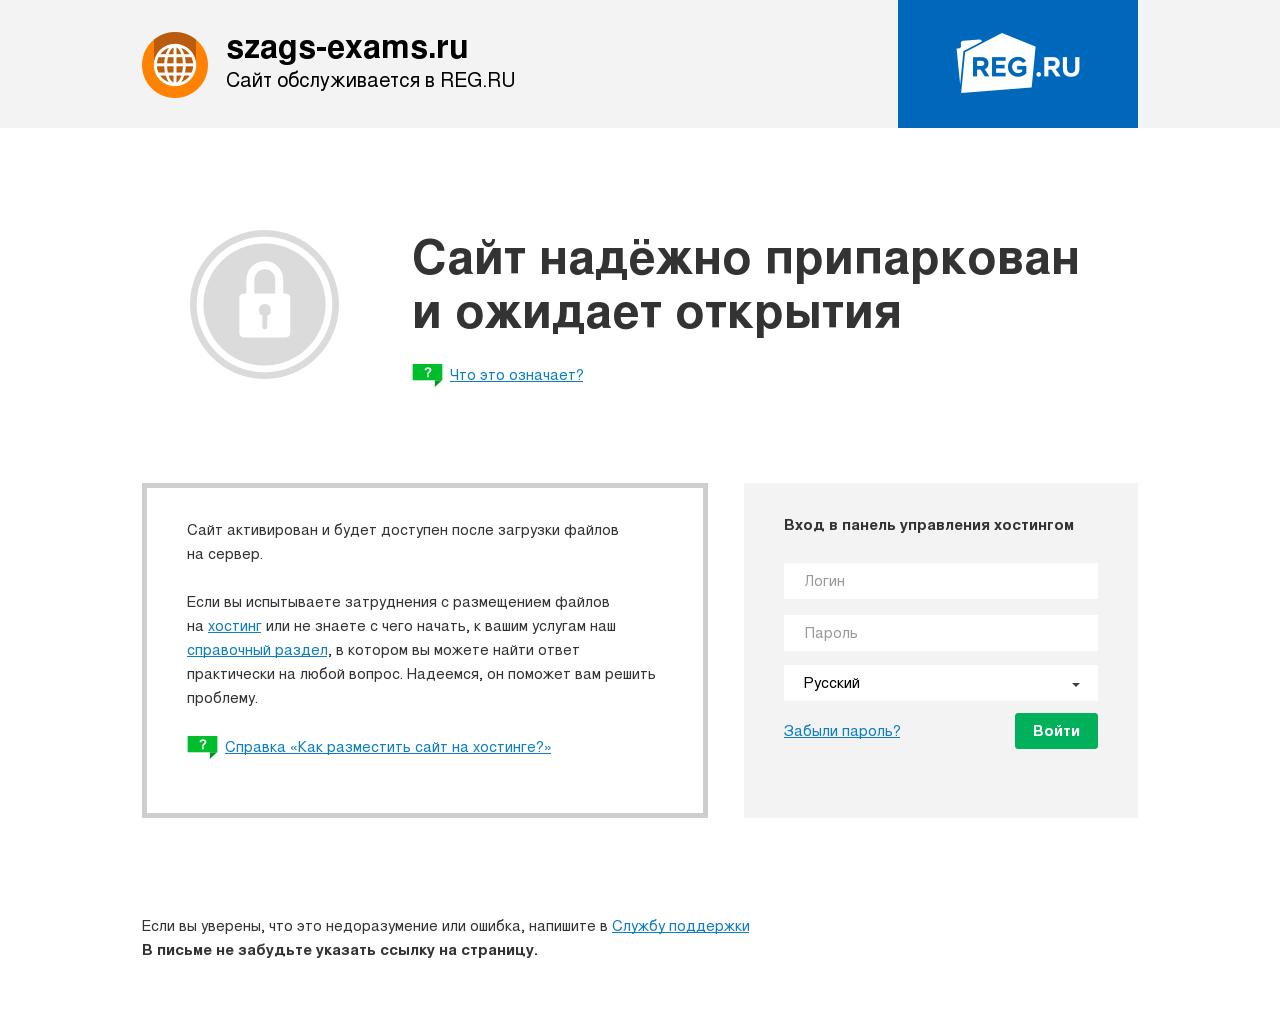 Изображение сайта szags-exams.ru в разрешении 1280x1024